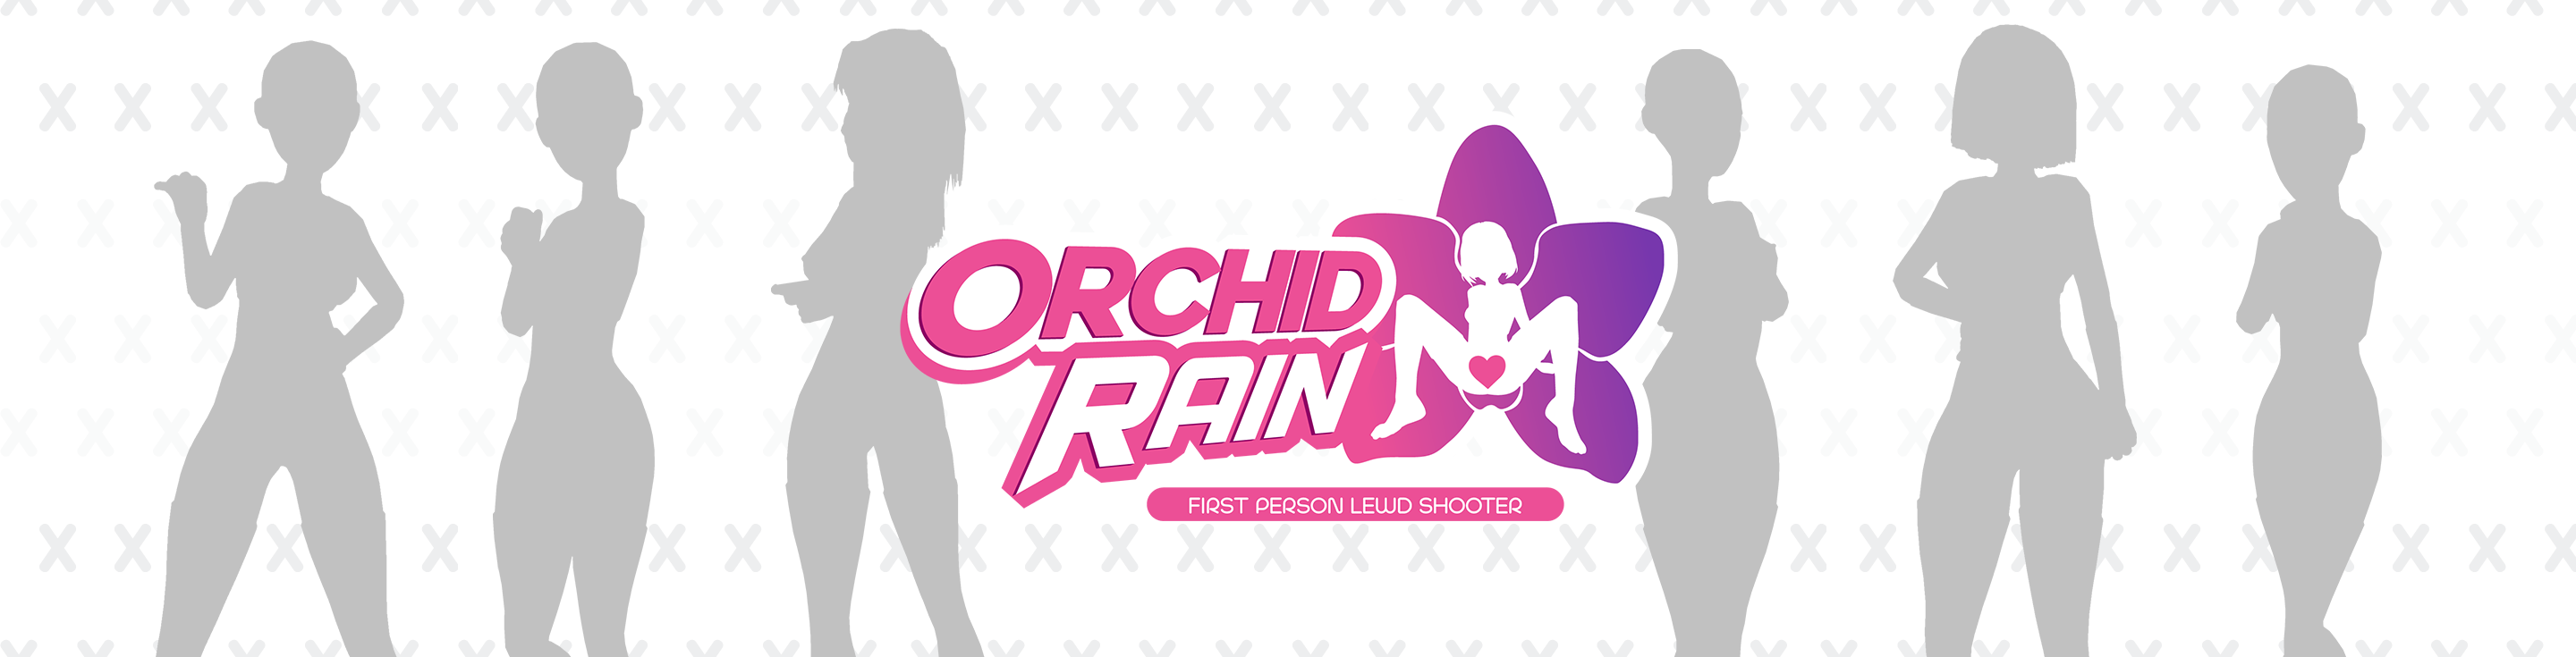 Orchid Rain - Mission 09 build